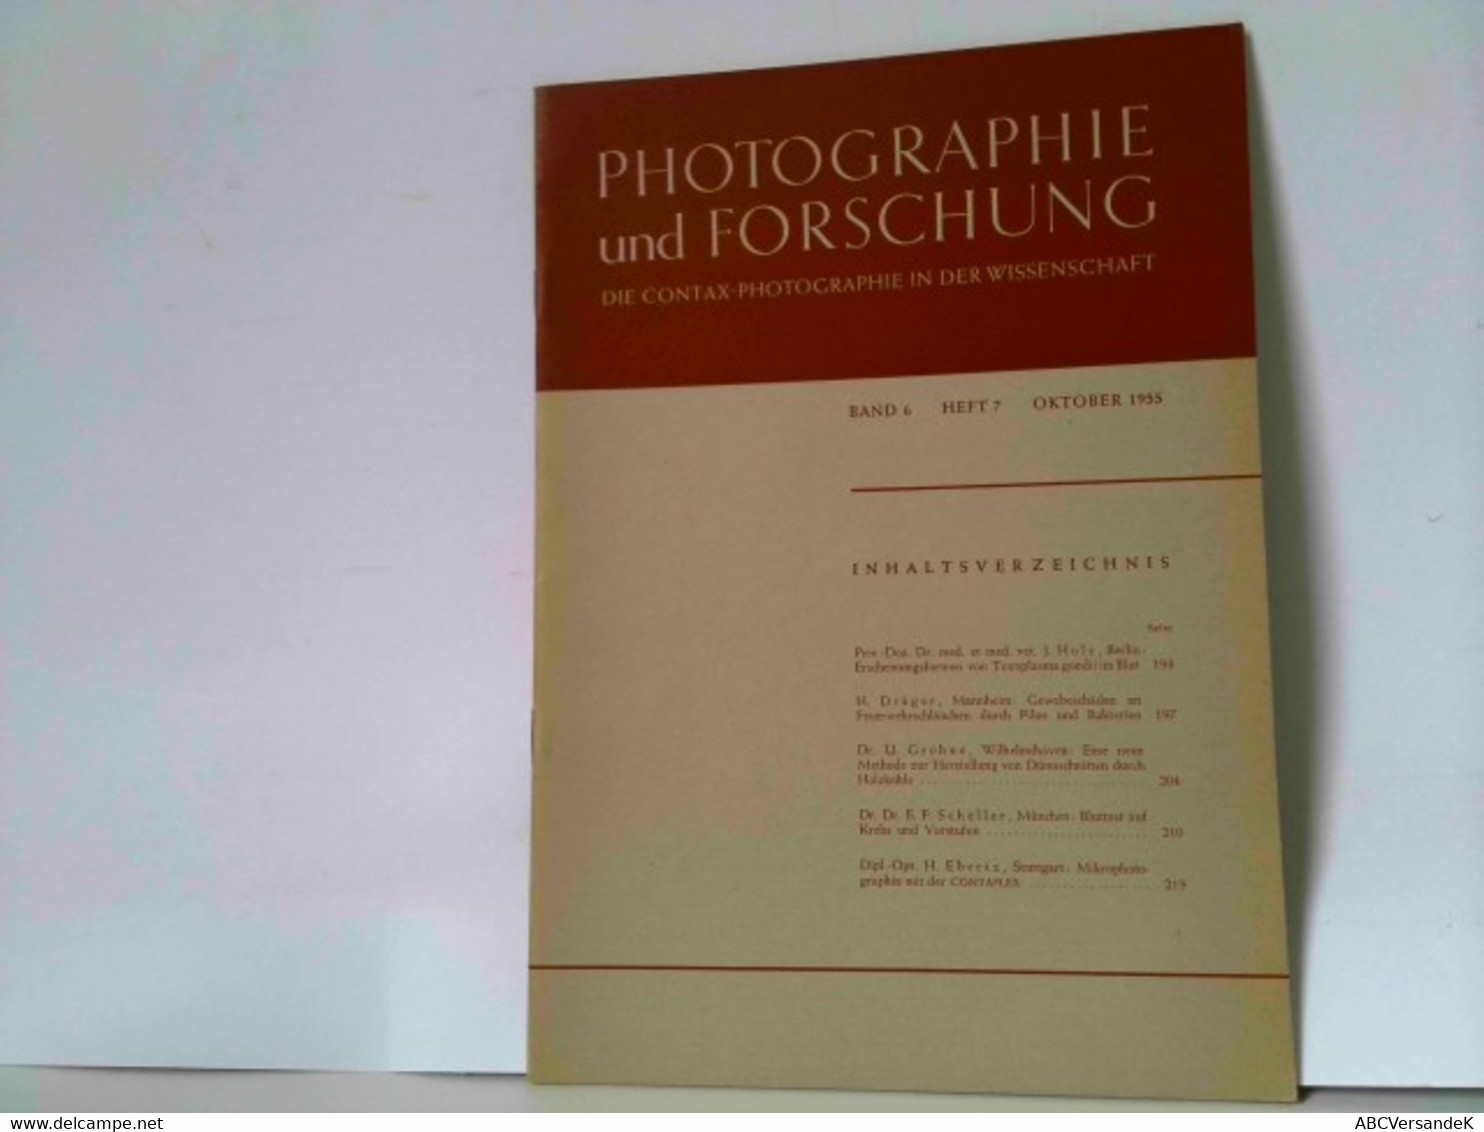 Photographie Und Forschung. Die Contax-Photographie In Der Wissenschaft. Band 6, Heft 7, Oktober 1955 - Fotografie